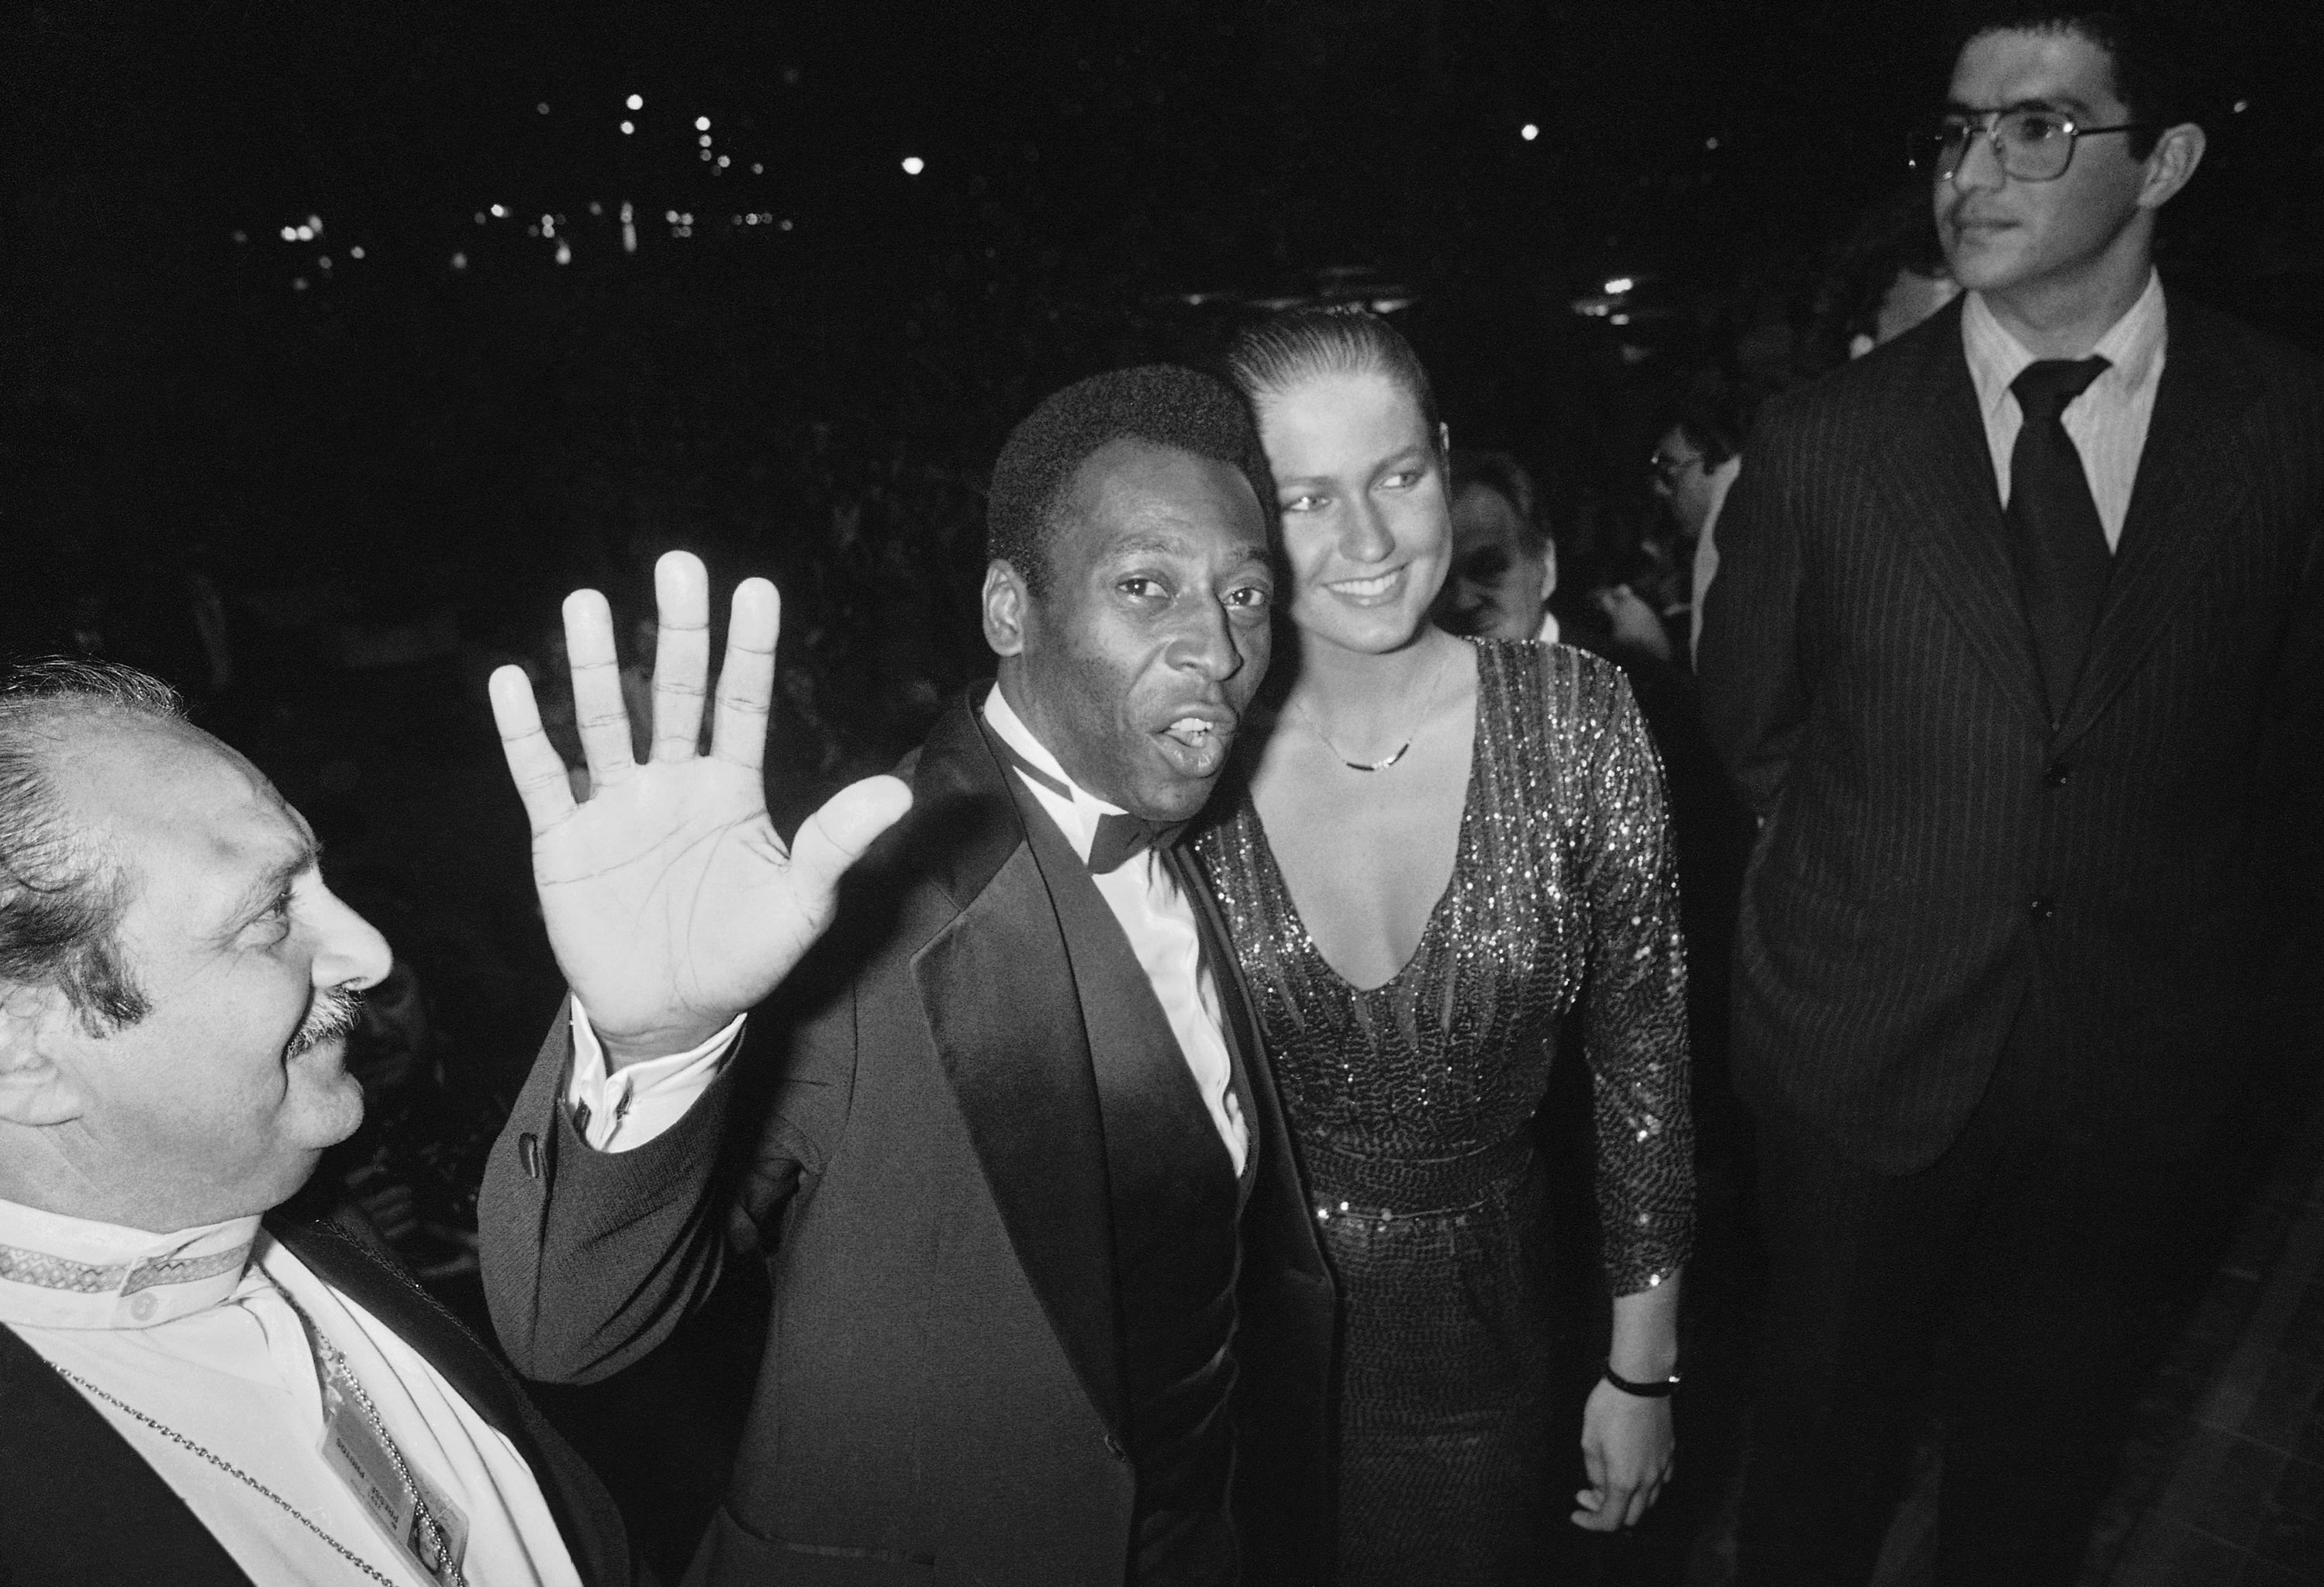 Archivo - El futbolista brasileño Pelé y su novia Xuxa llegan para ver la proyección de la película española Carmen, dirigida por Carlos Saura, durante el festival de cine de Cannes, Francia, el 15 de mayo de 1983 (AP Foto, Archivo)